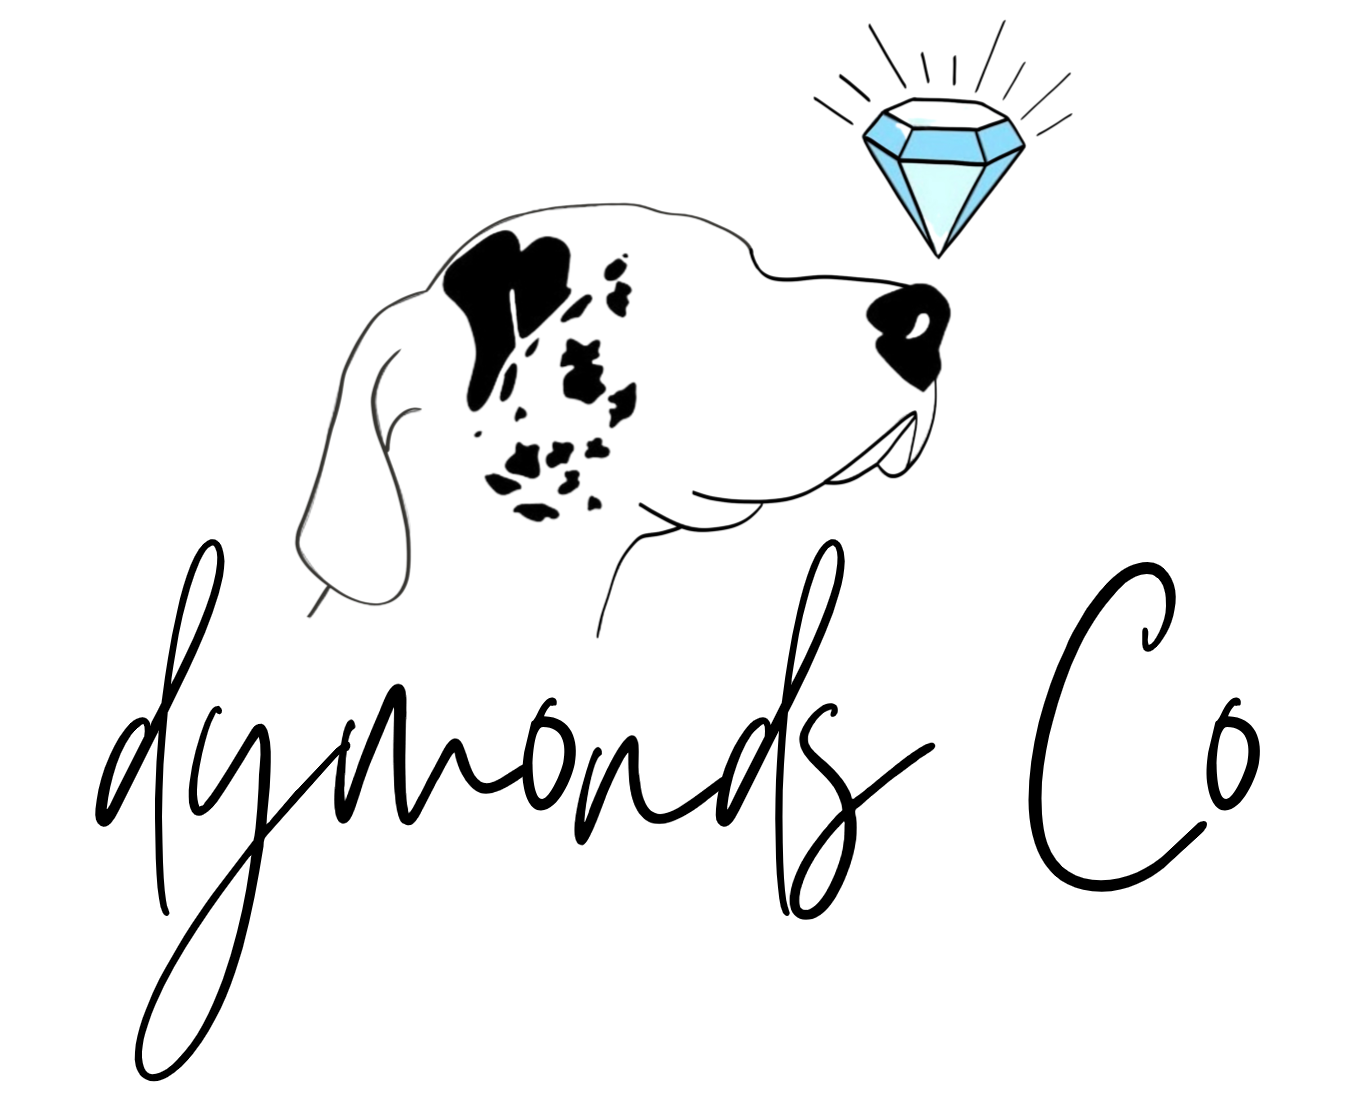 Dymond's Co